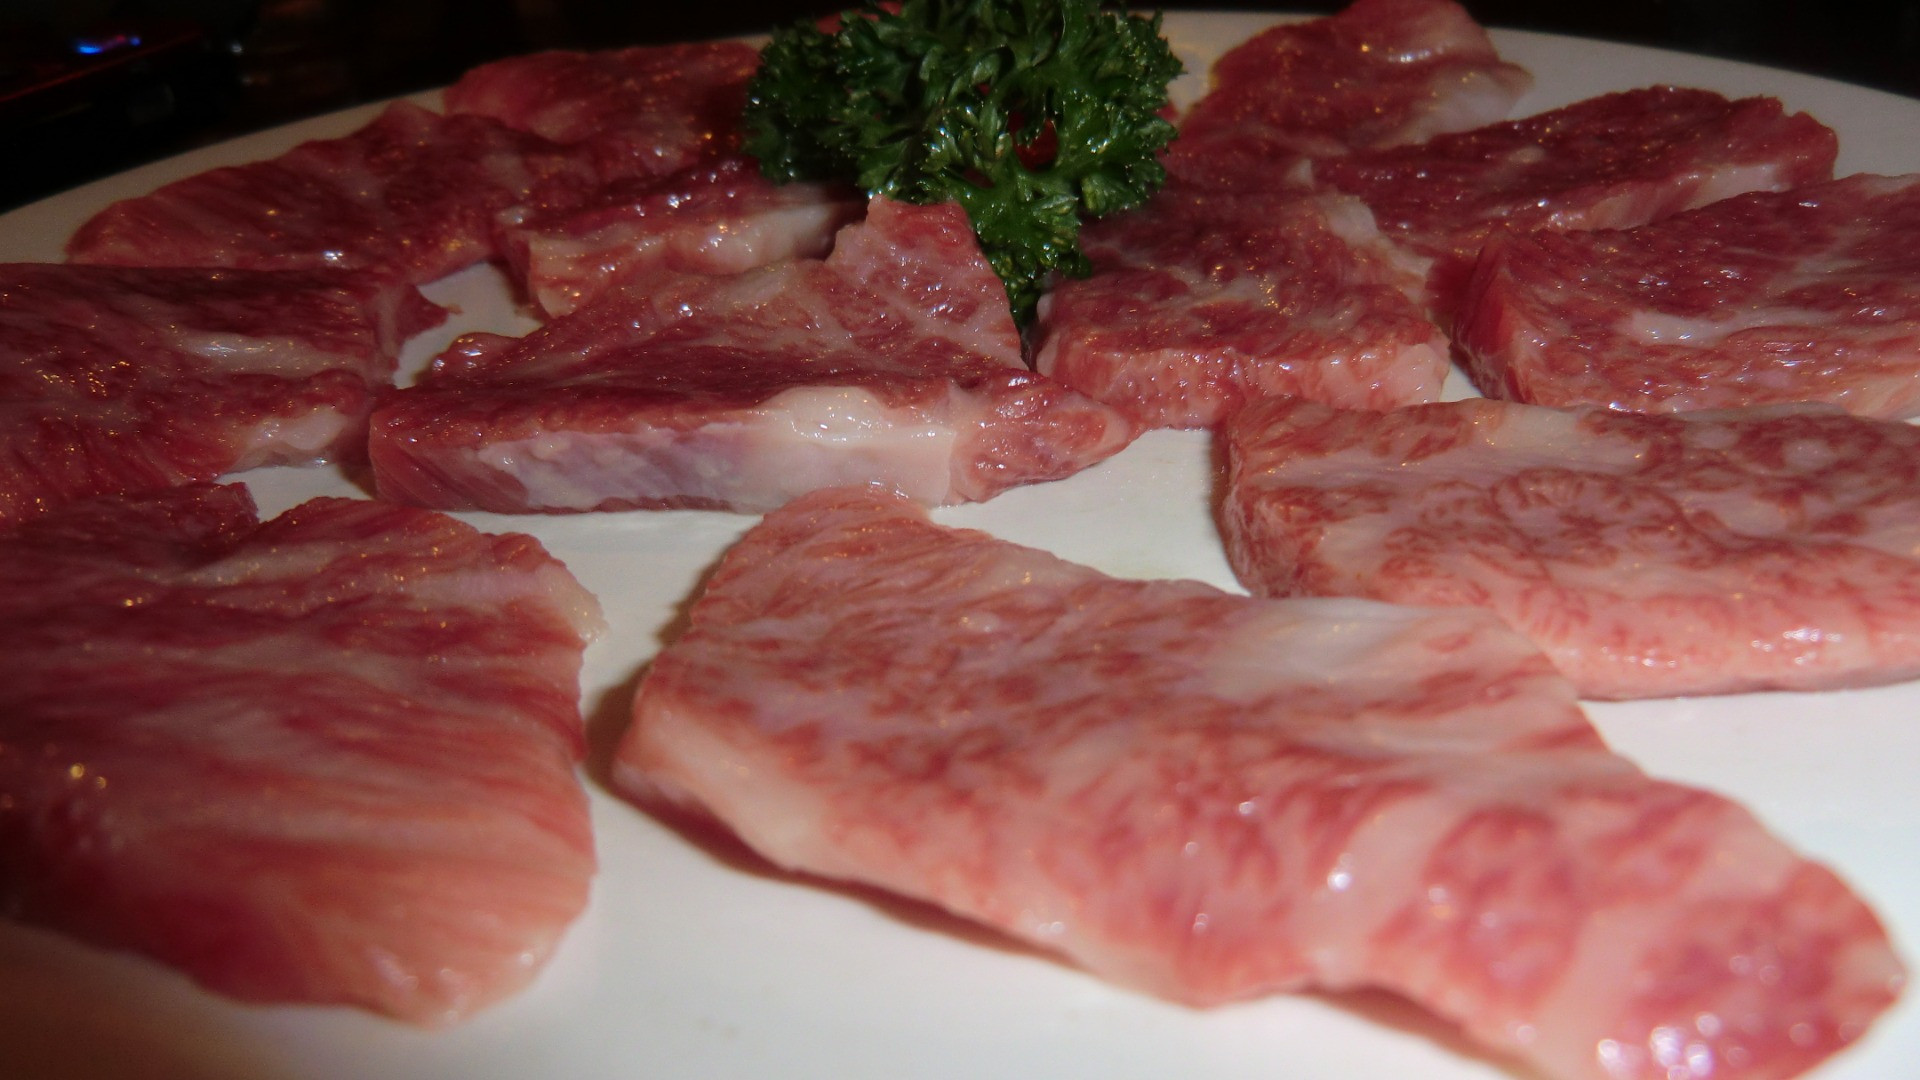 松阪市の焼肉店で新鮮なお肉をご賞味ください